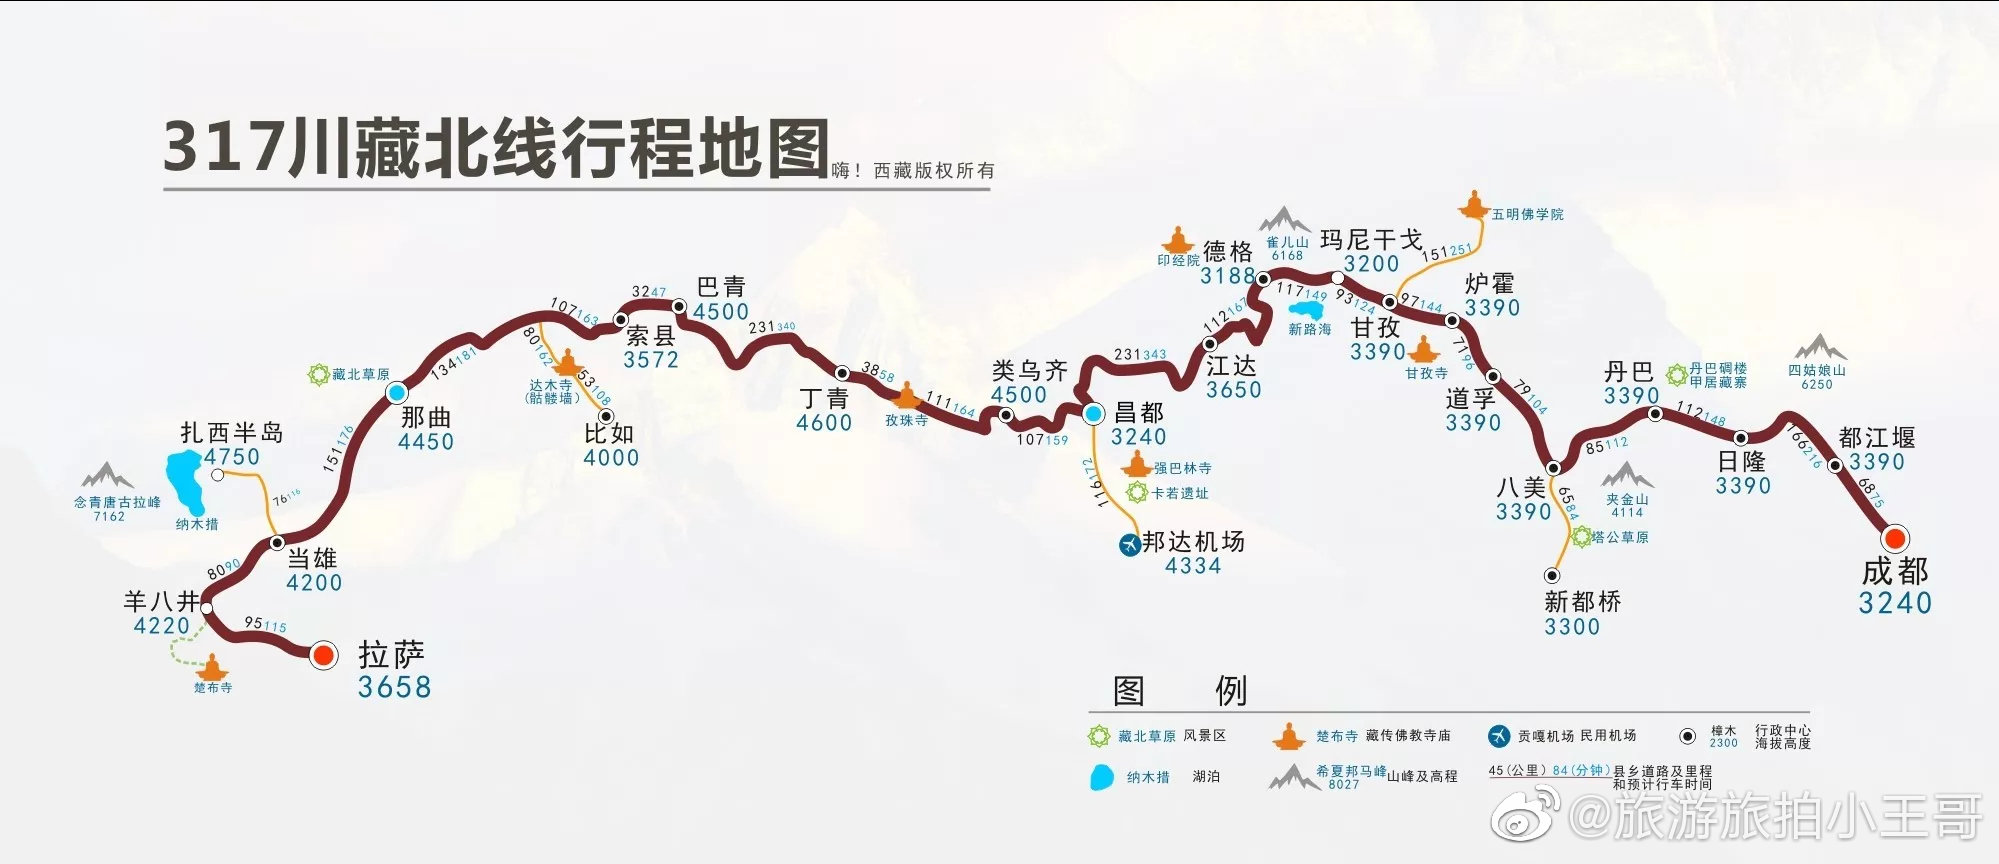 下面是小王哥整理出关于进西藏旅游路线地图  西藏各个线路地图大全